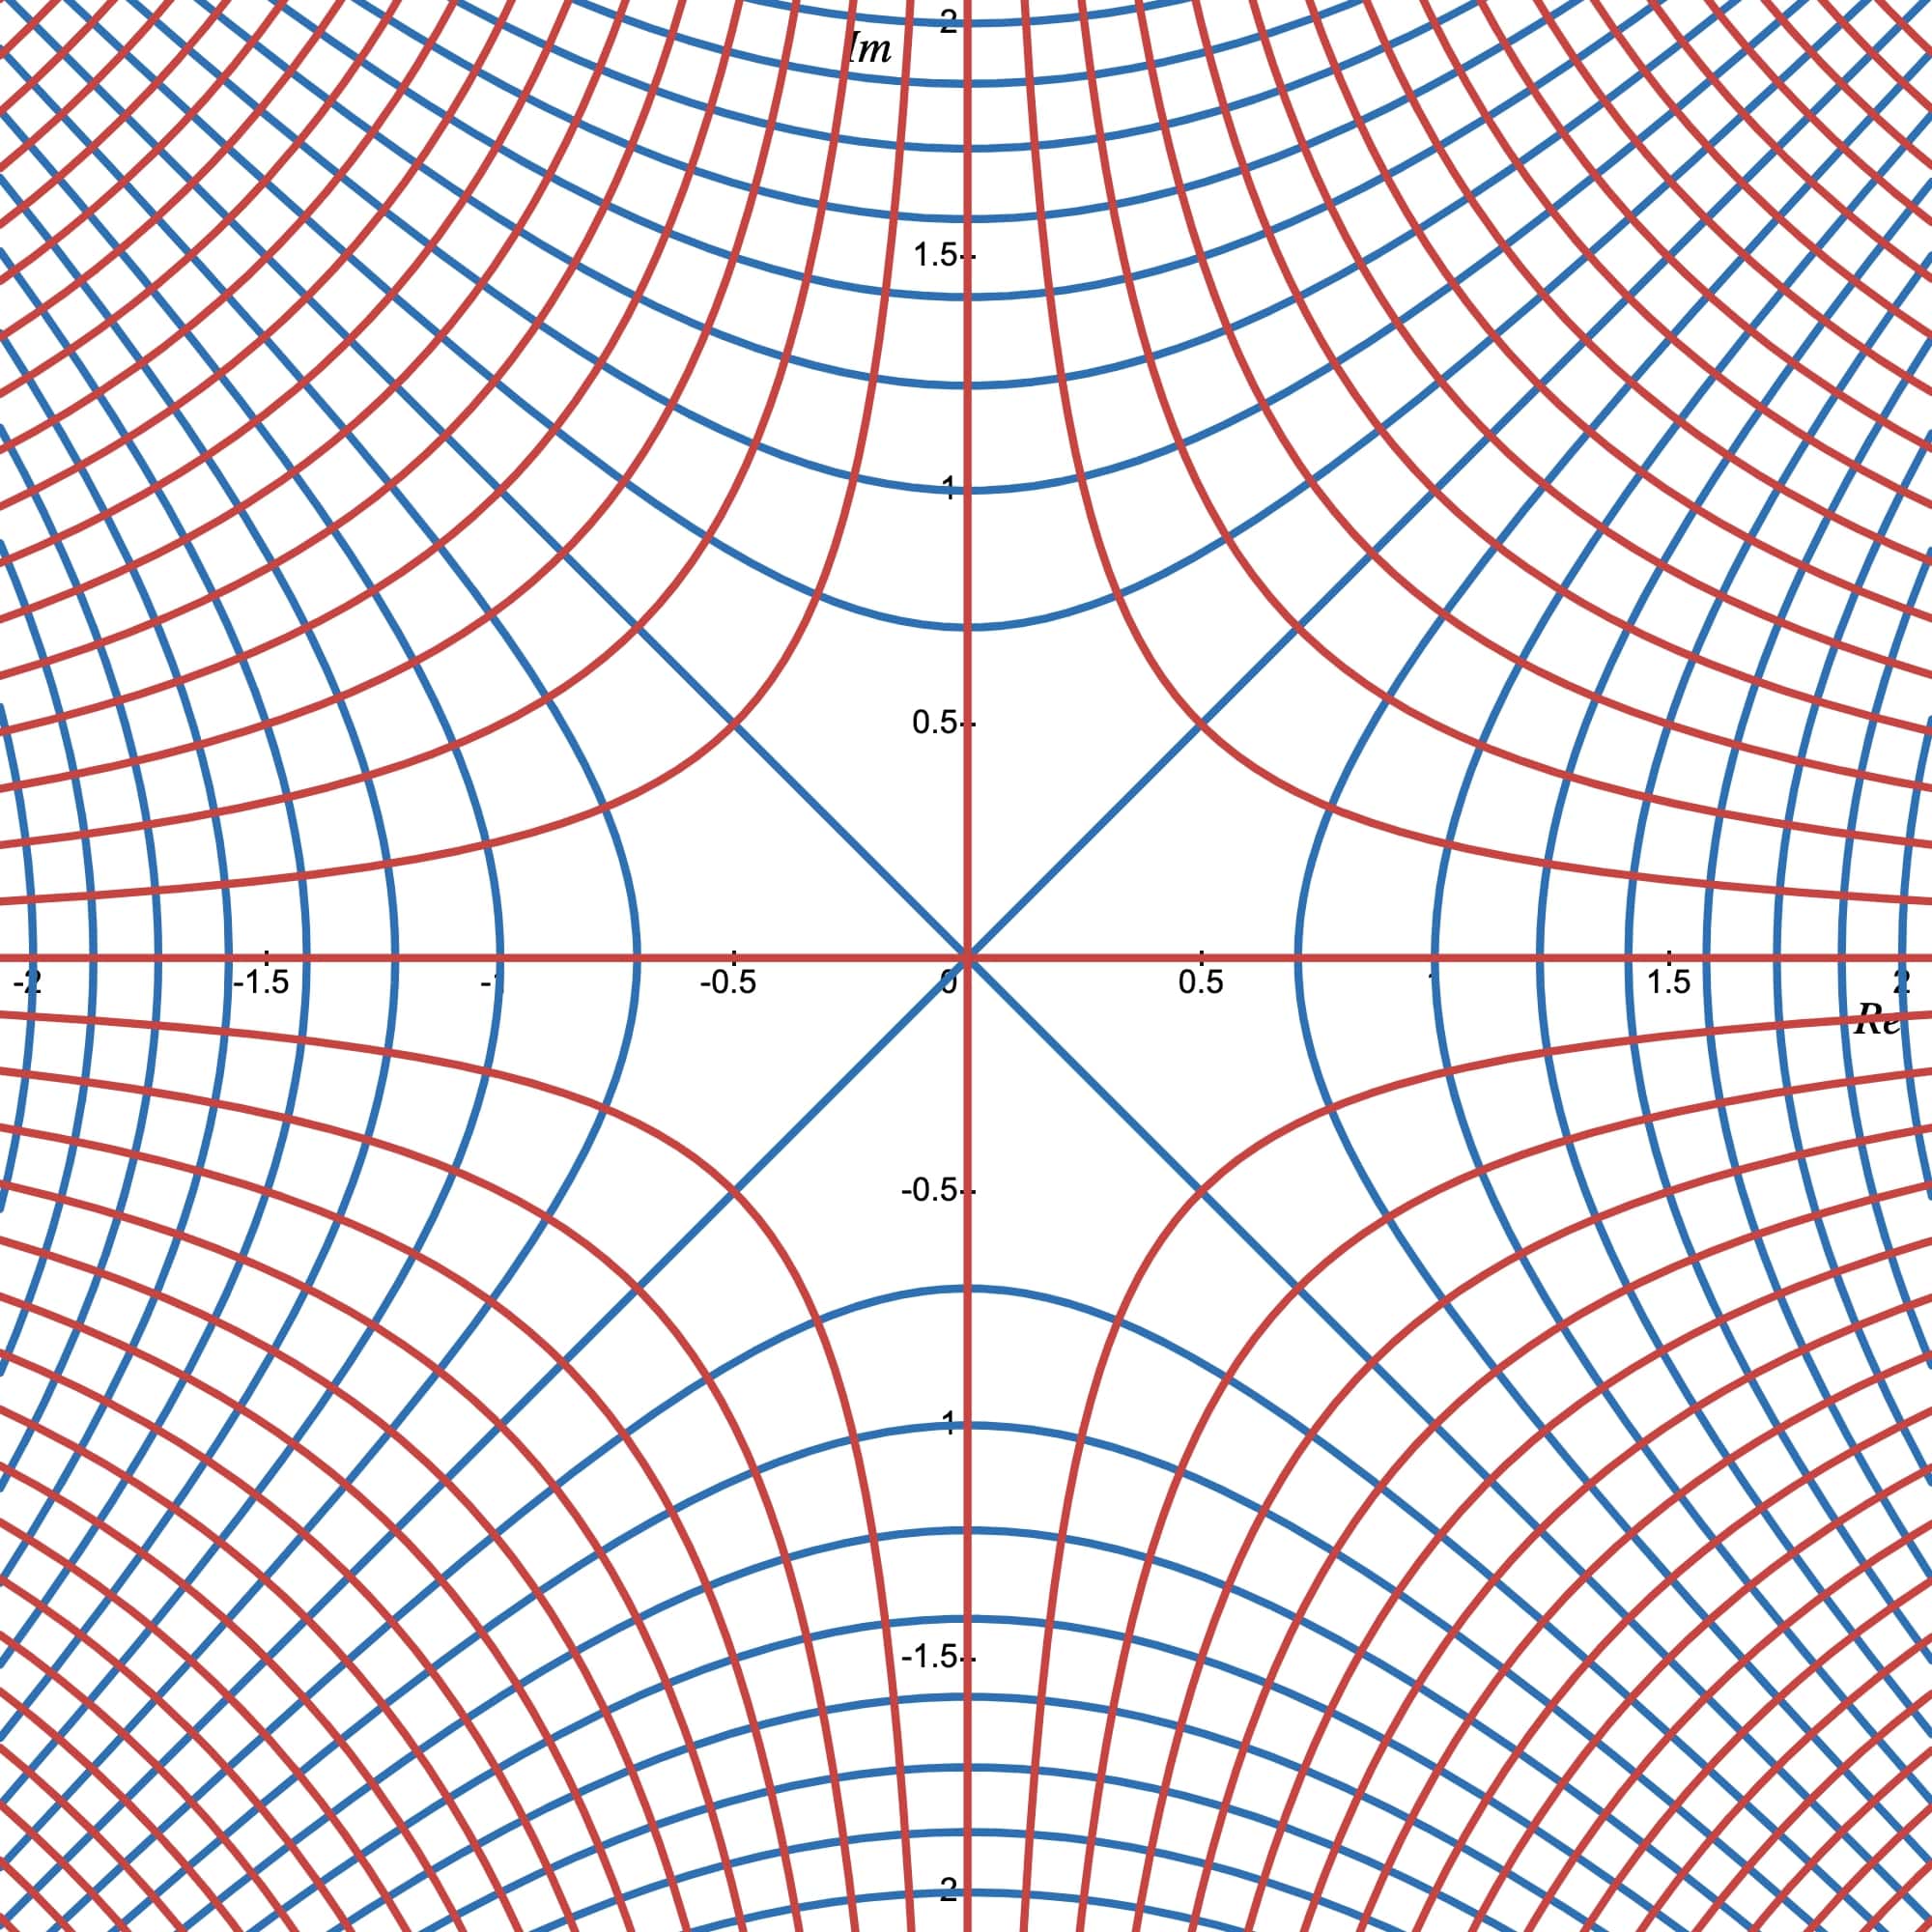 Orthogonal level curves